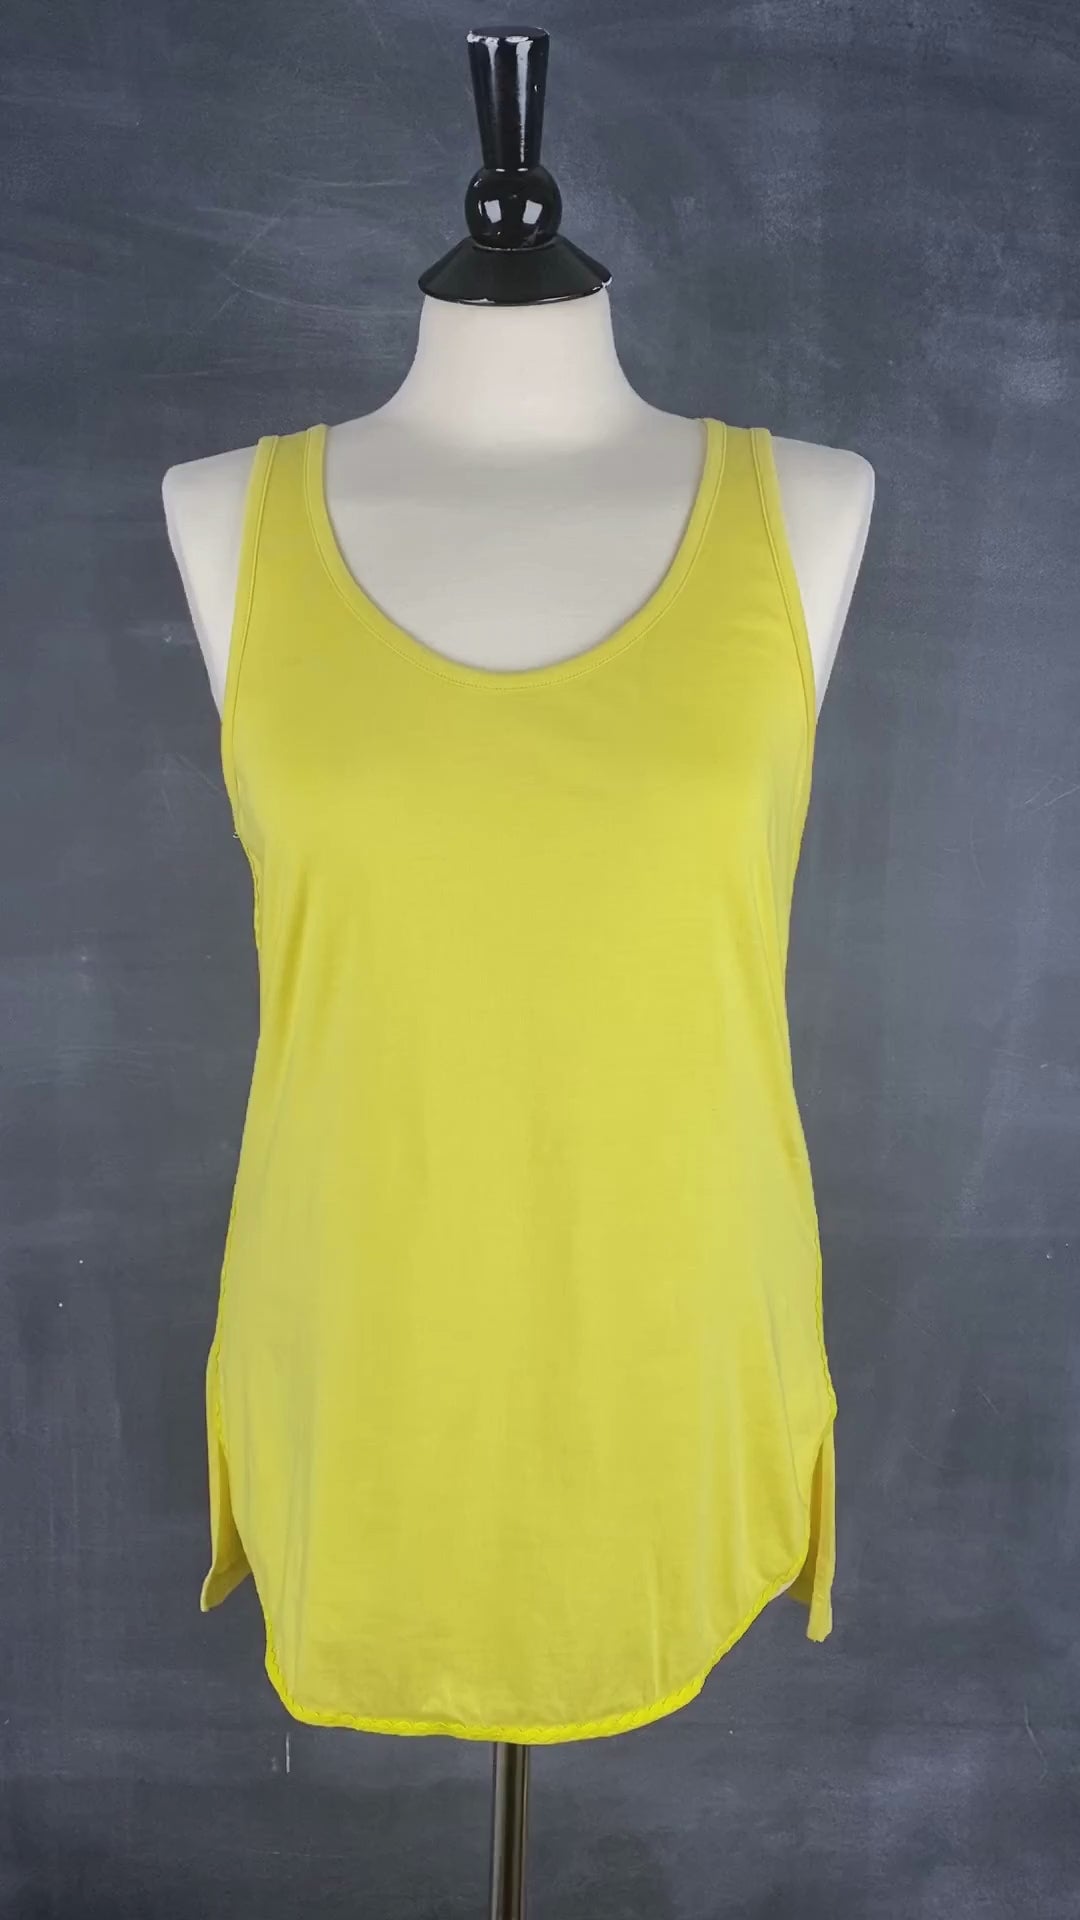 Camisole jaune en coton pima Tristan, taille small. Vue de la vidéo qui présente les détails de la camisole.